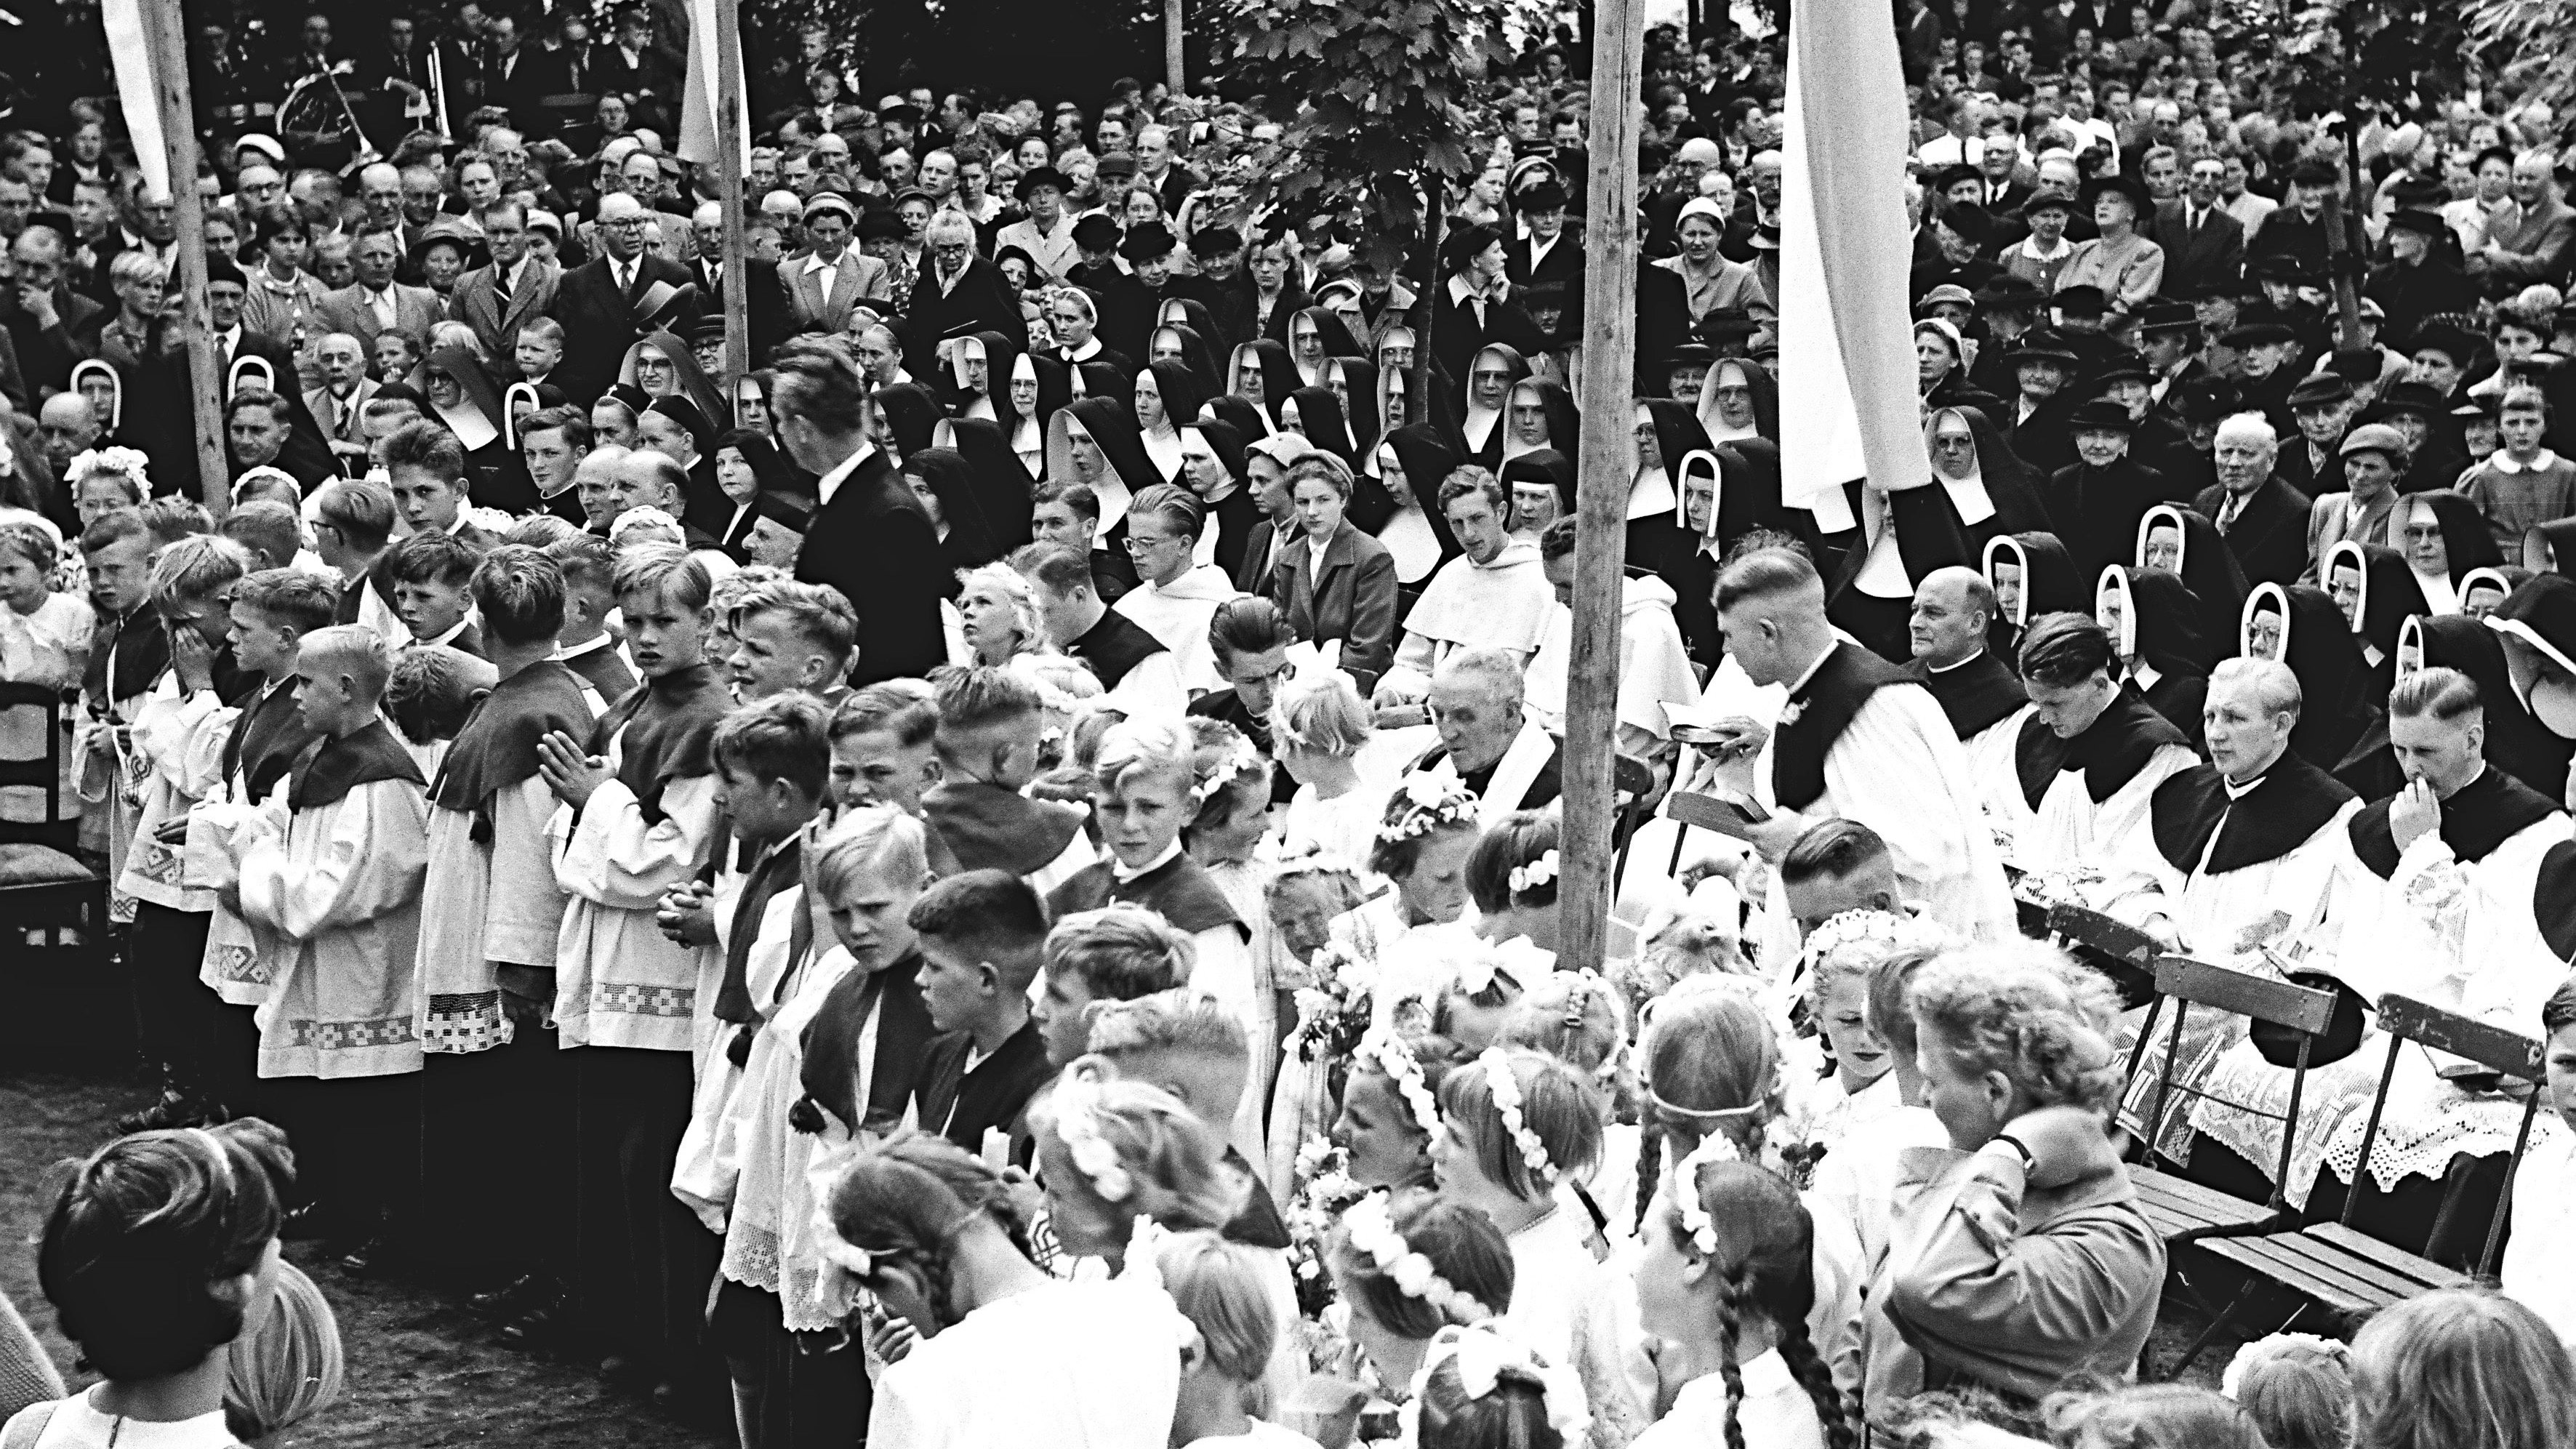 Als die katholische Kirche noch ein Publikumsmagnet war: eine Impression vom St.-Anna-Tag in Lohne im Jahr 1956. Foto: Stadtmedienarchiv des Heimatvereins Lohne